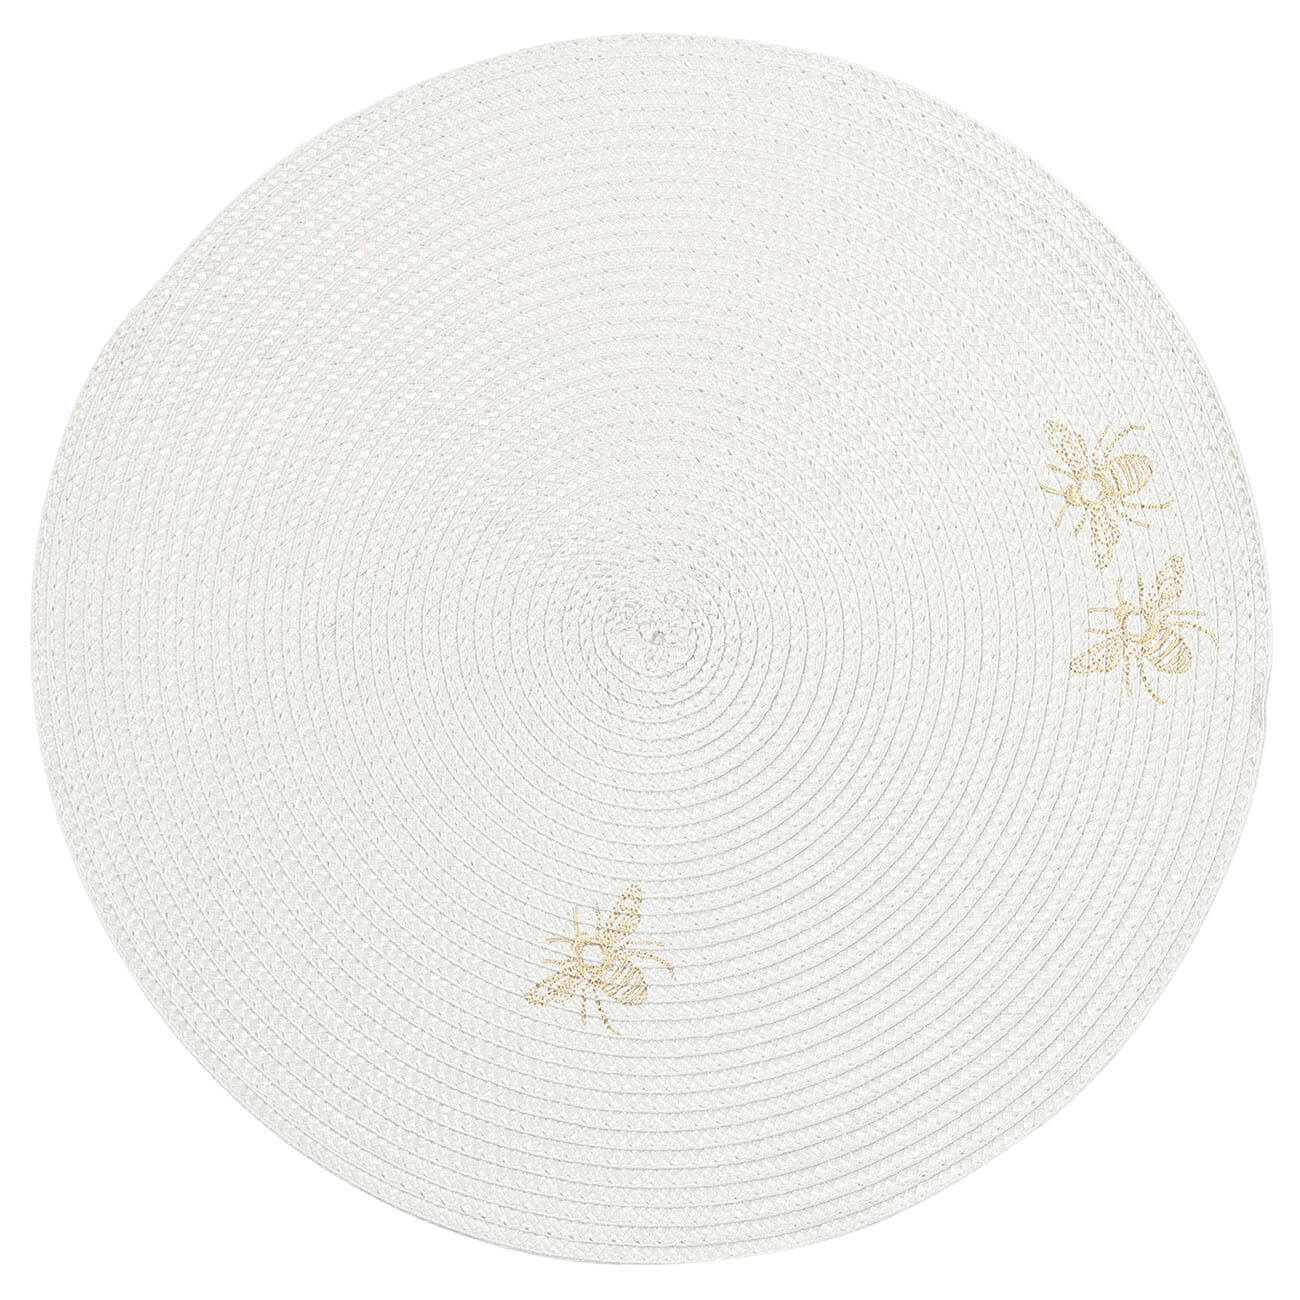 Салфетка под приборы, 38 см, полипропилен/ПЭТ, круглая, светло-серая, Пчелы, Circle embroidery салфетка микрофибра для сильных загрязнений ladina